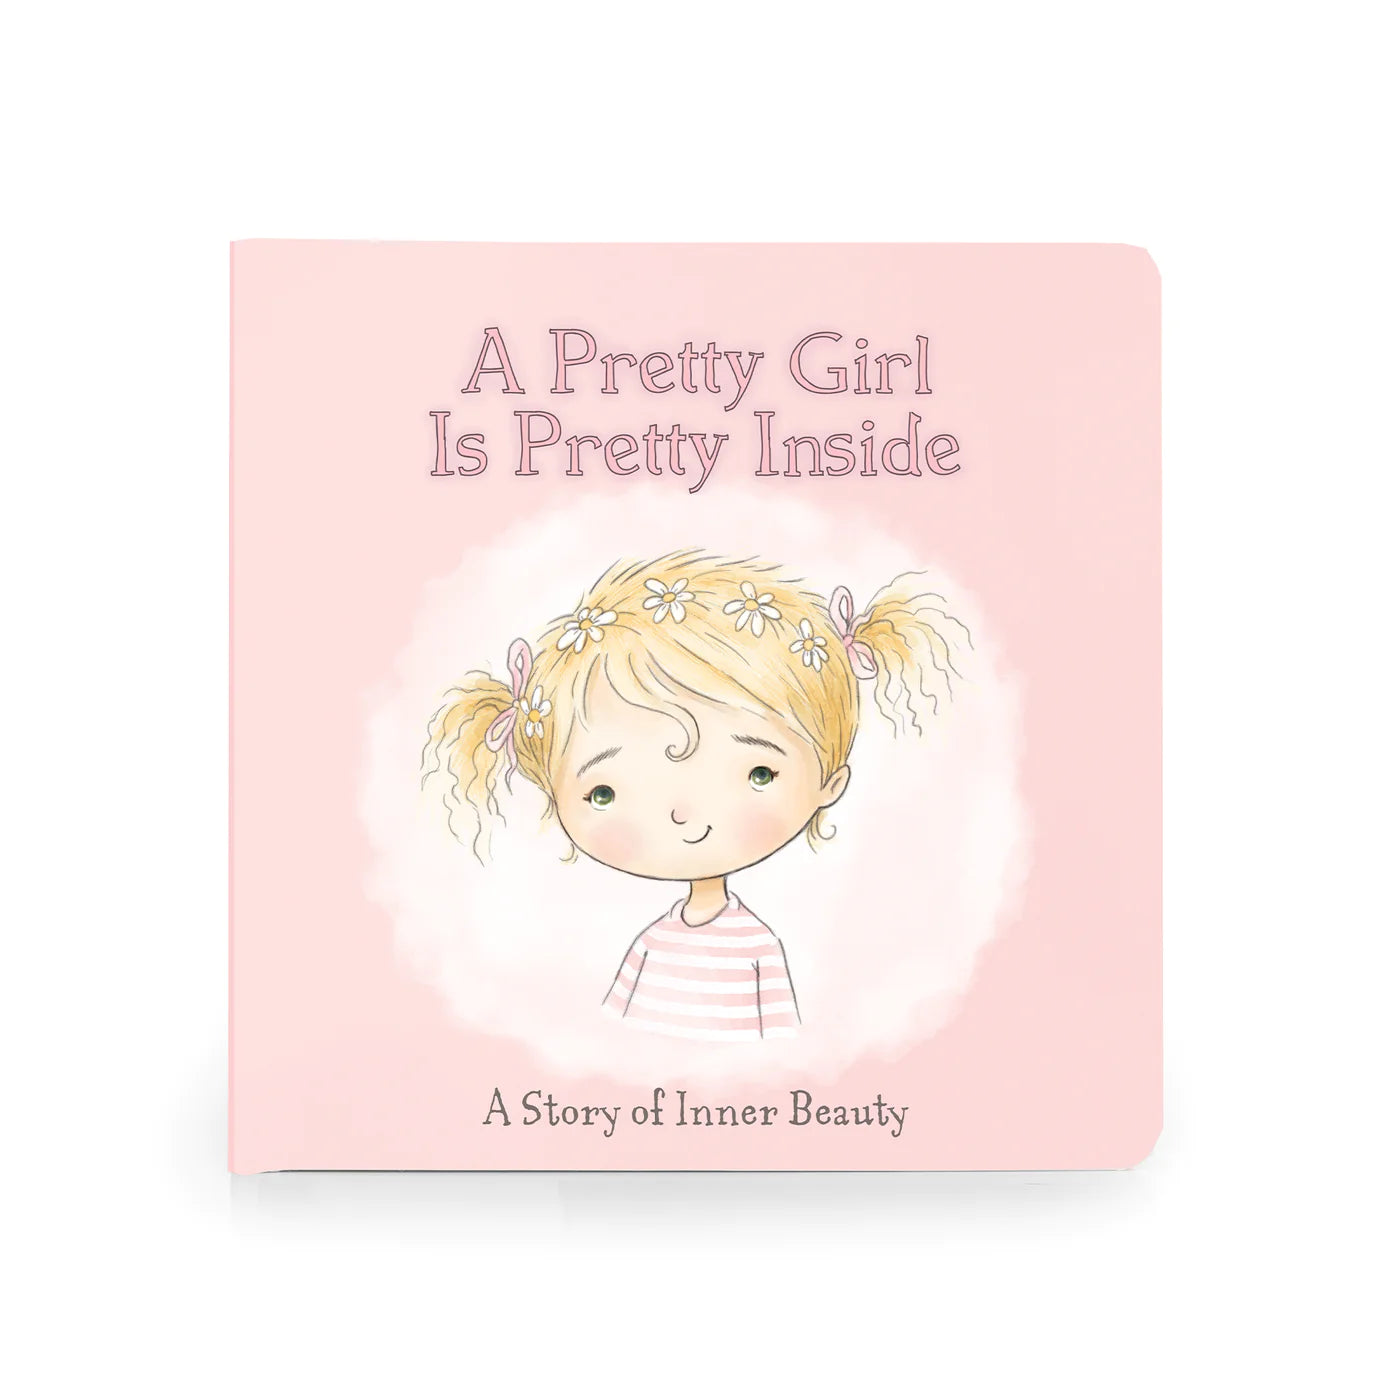 A Pretty Girl Board Book